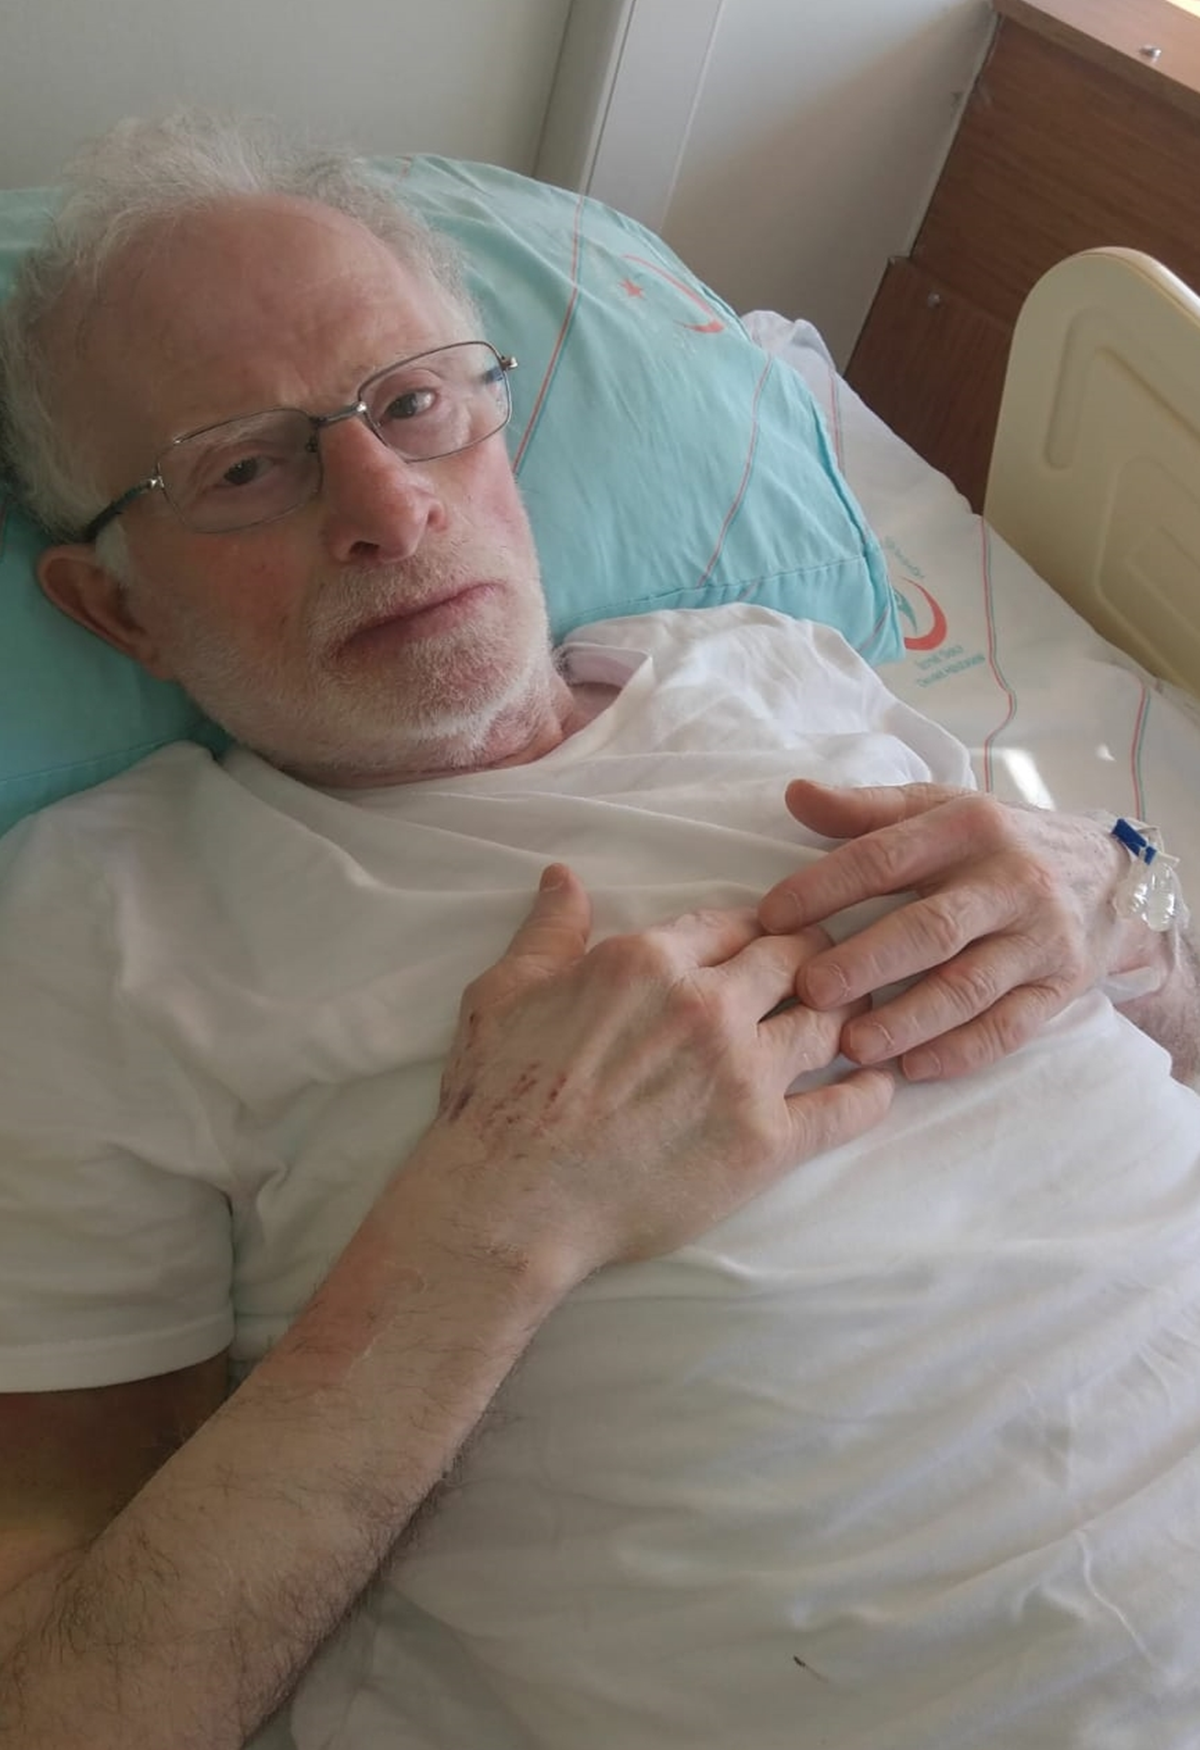 68 yandaki adam kalp, eker ve tansiyon hastalklarna ramen Kovid-19'u atlatmay baard